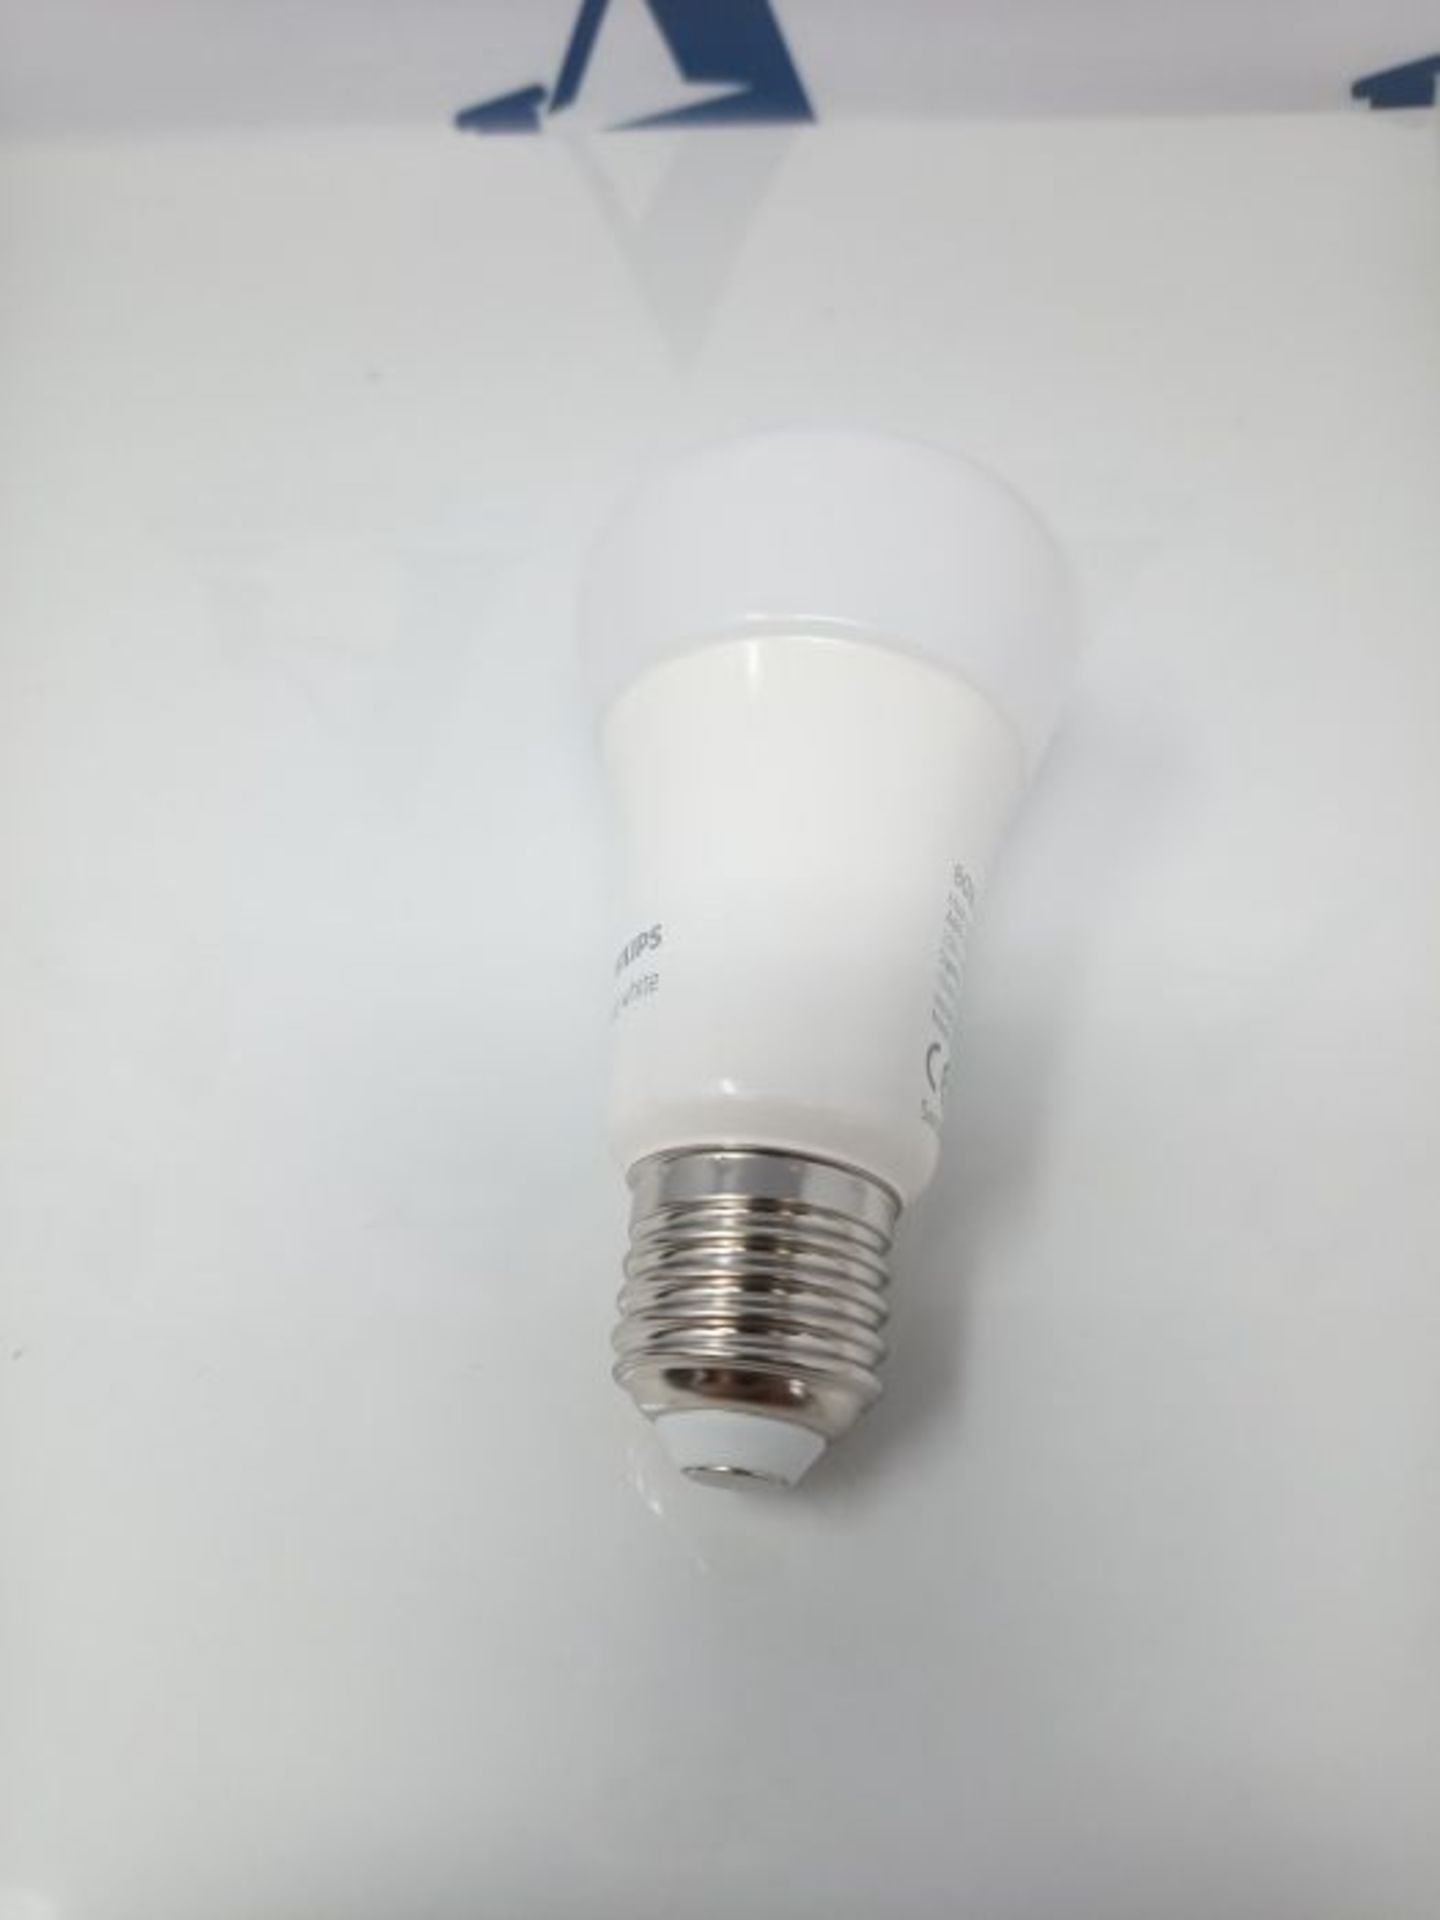 Philips Hue White Lampadina LED Connessa, con Bluetooth, Attacco E27, Dimmerabile, 60W - Image 3 of 3